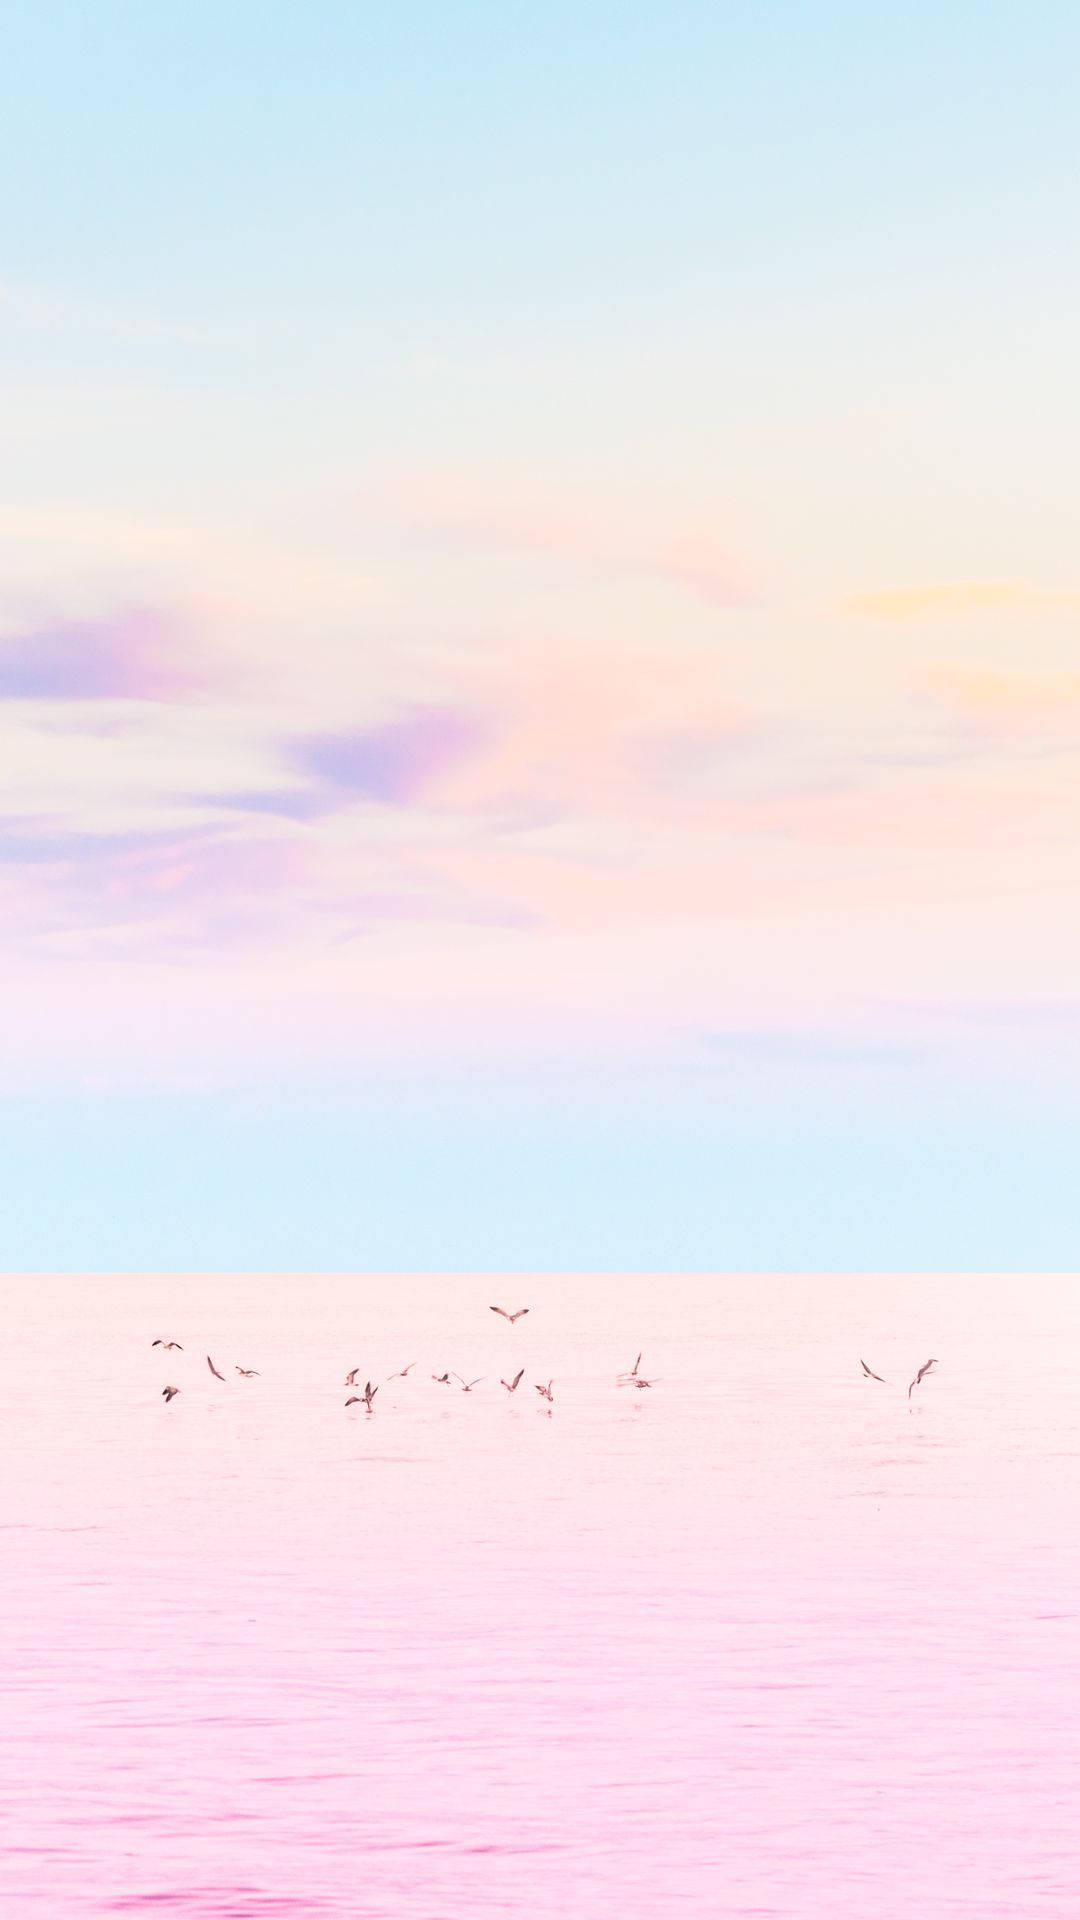 A joyful pastel landscape of ethereal beauty. Wallpaper